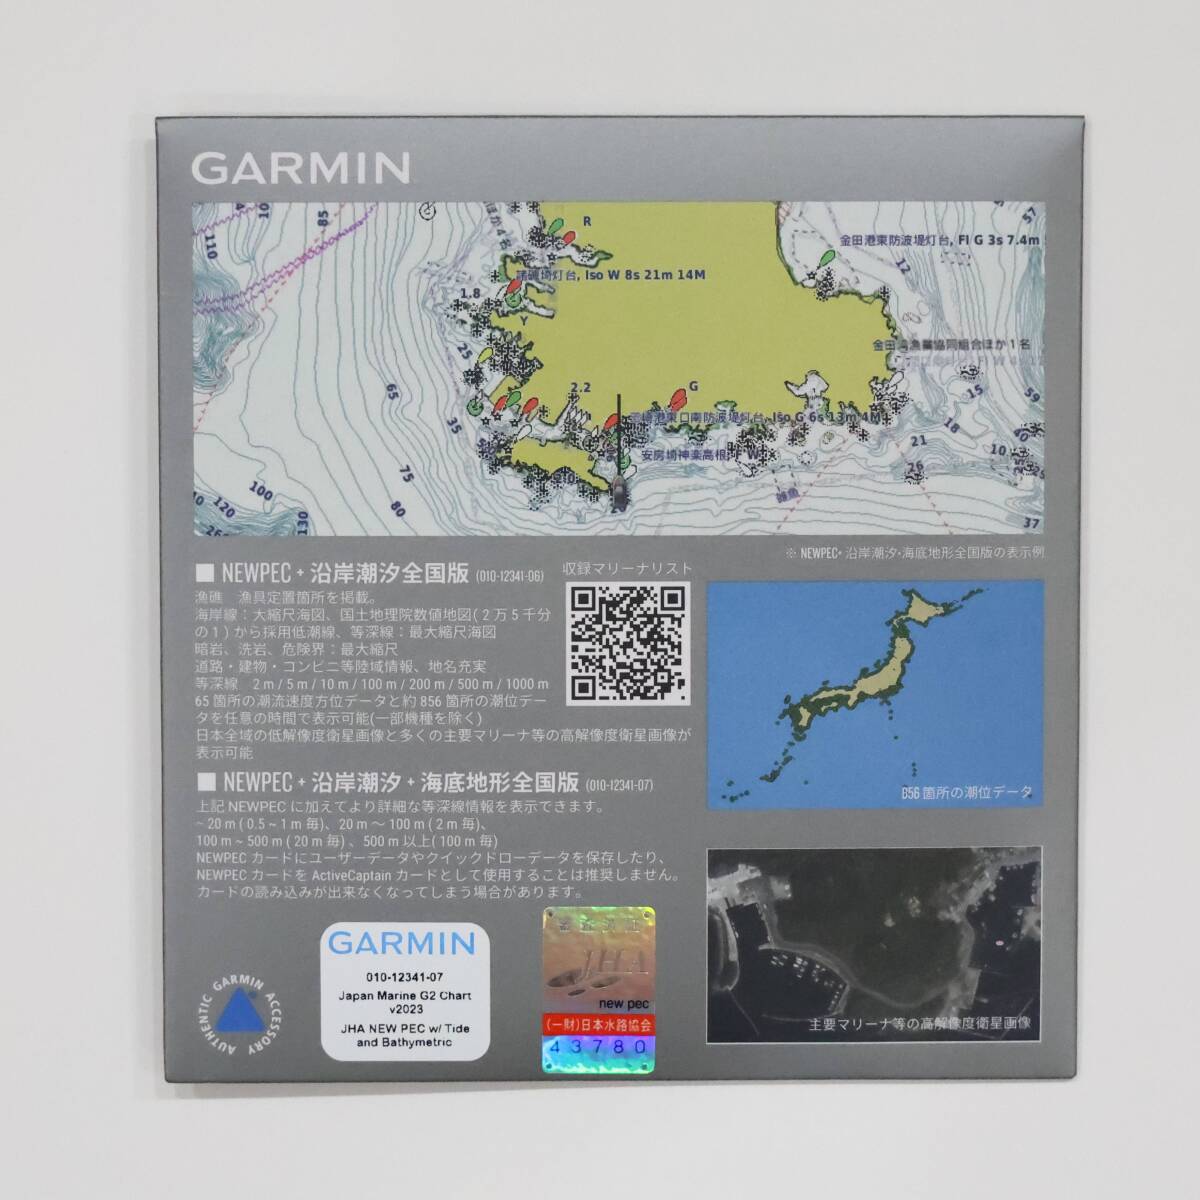 GARMIN NEWPEC + 沿岸潮汐 + 海底地形全国版 2023年版 美品 010-12341-07 ガーミン_画像2